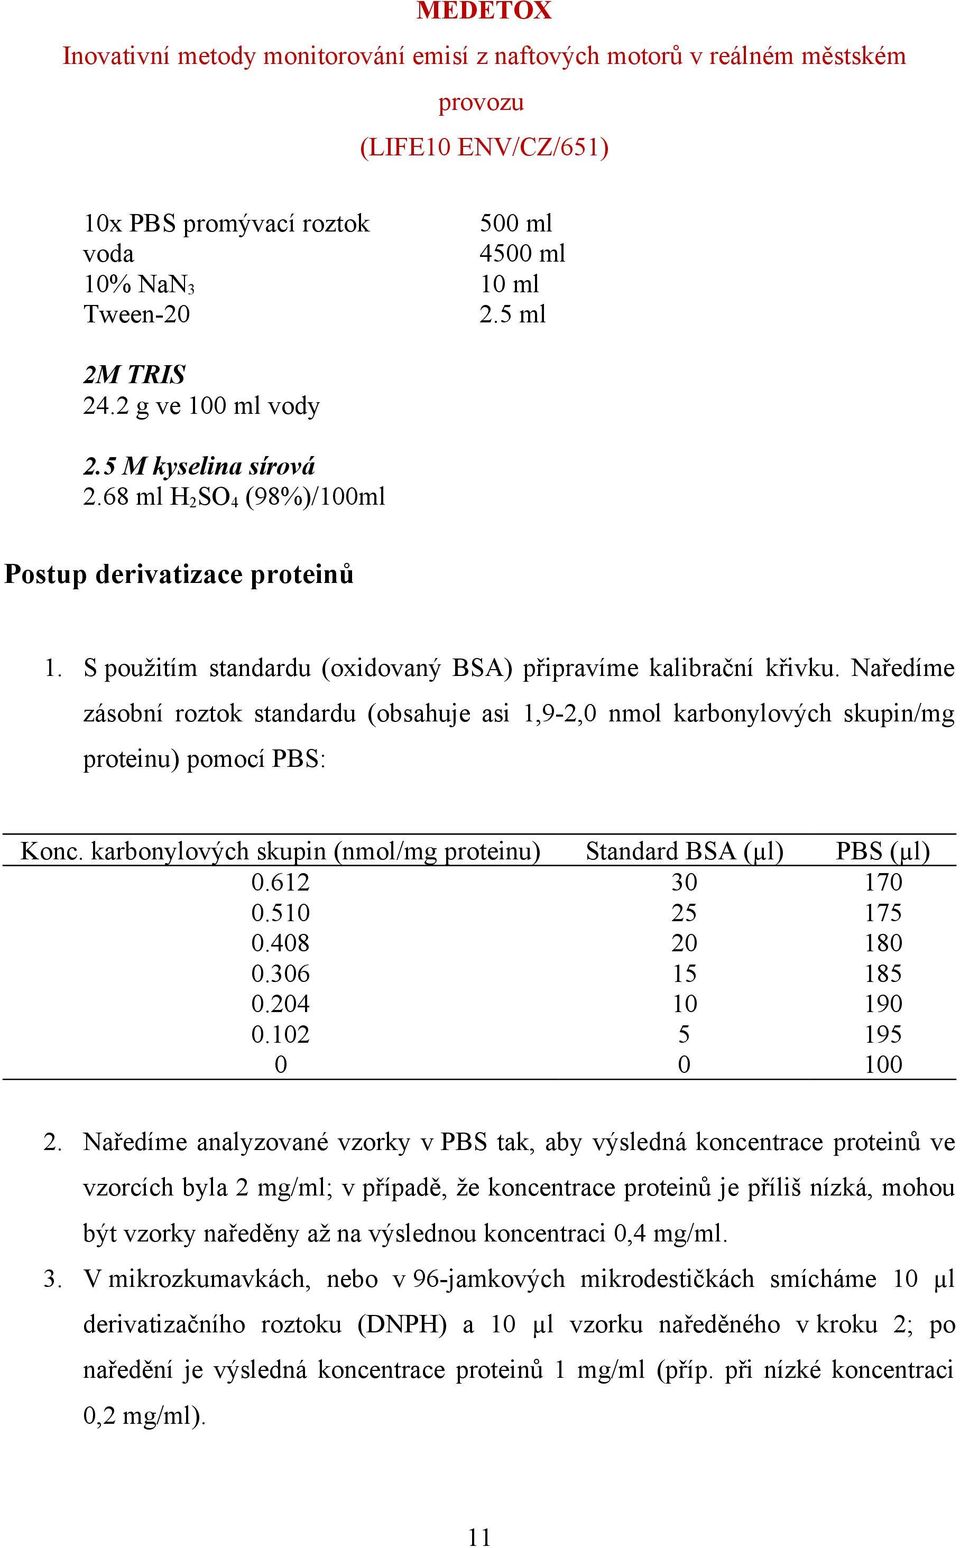 Naředíme zásobní roztok standardu (obsahuje asi 1,9-2,0 nmol karbonylových skupin/mg proteinu) pomocí PBS: Konc. karbonylových skupin (nmol/mg proteinu) Standard BSA (µl) PBS (µl) 0.612 30 170 0.